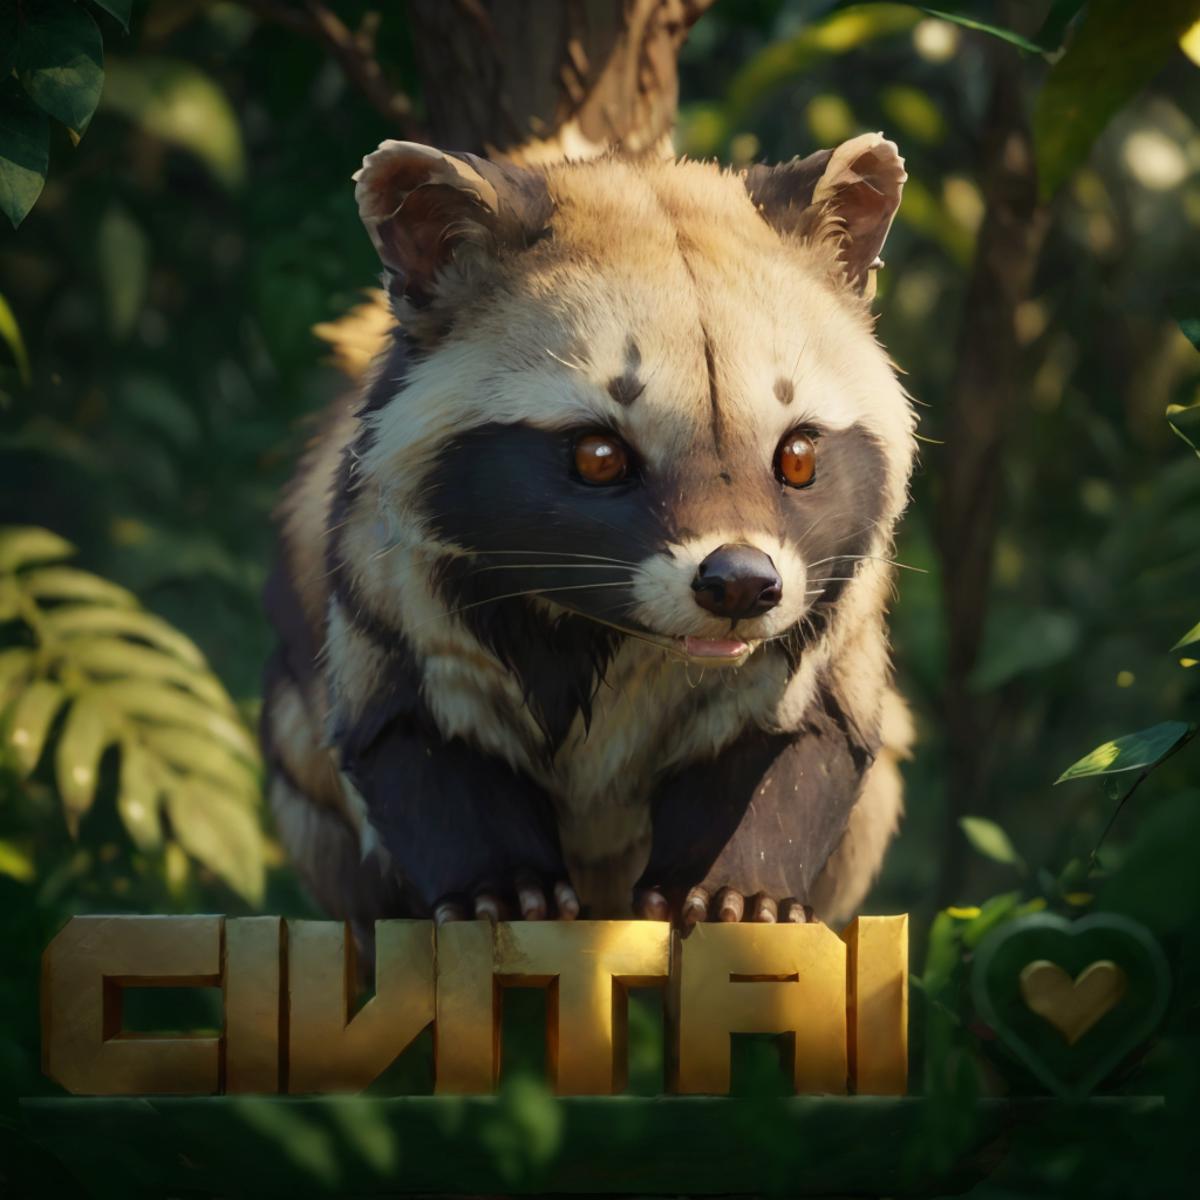 CivitAI Mascot / Logo generator (Civet) image by getphat